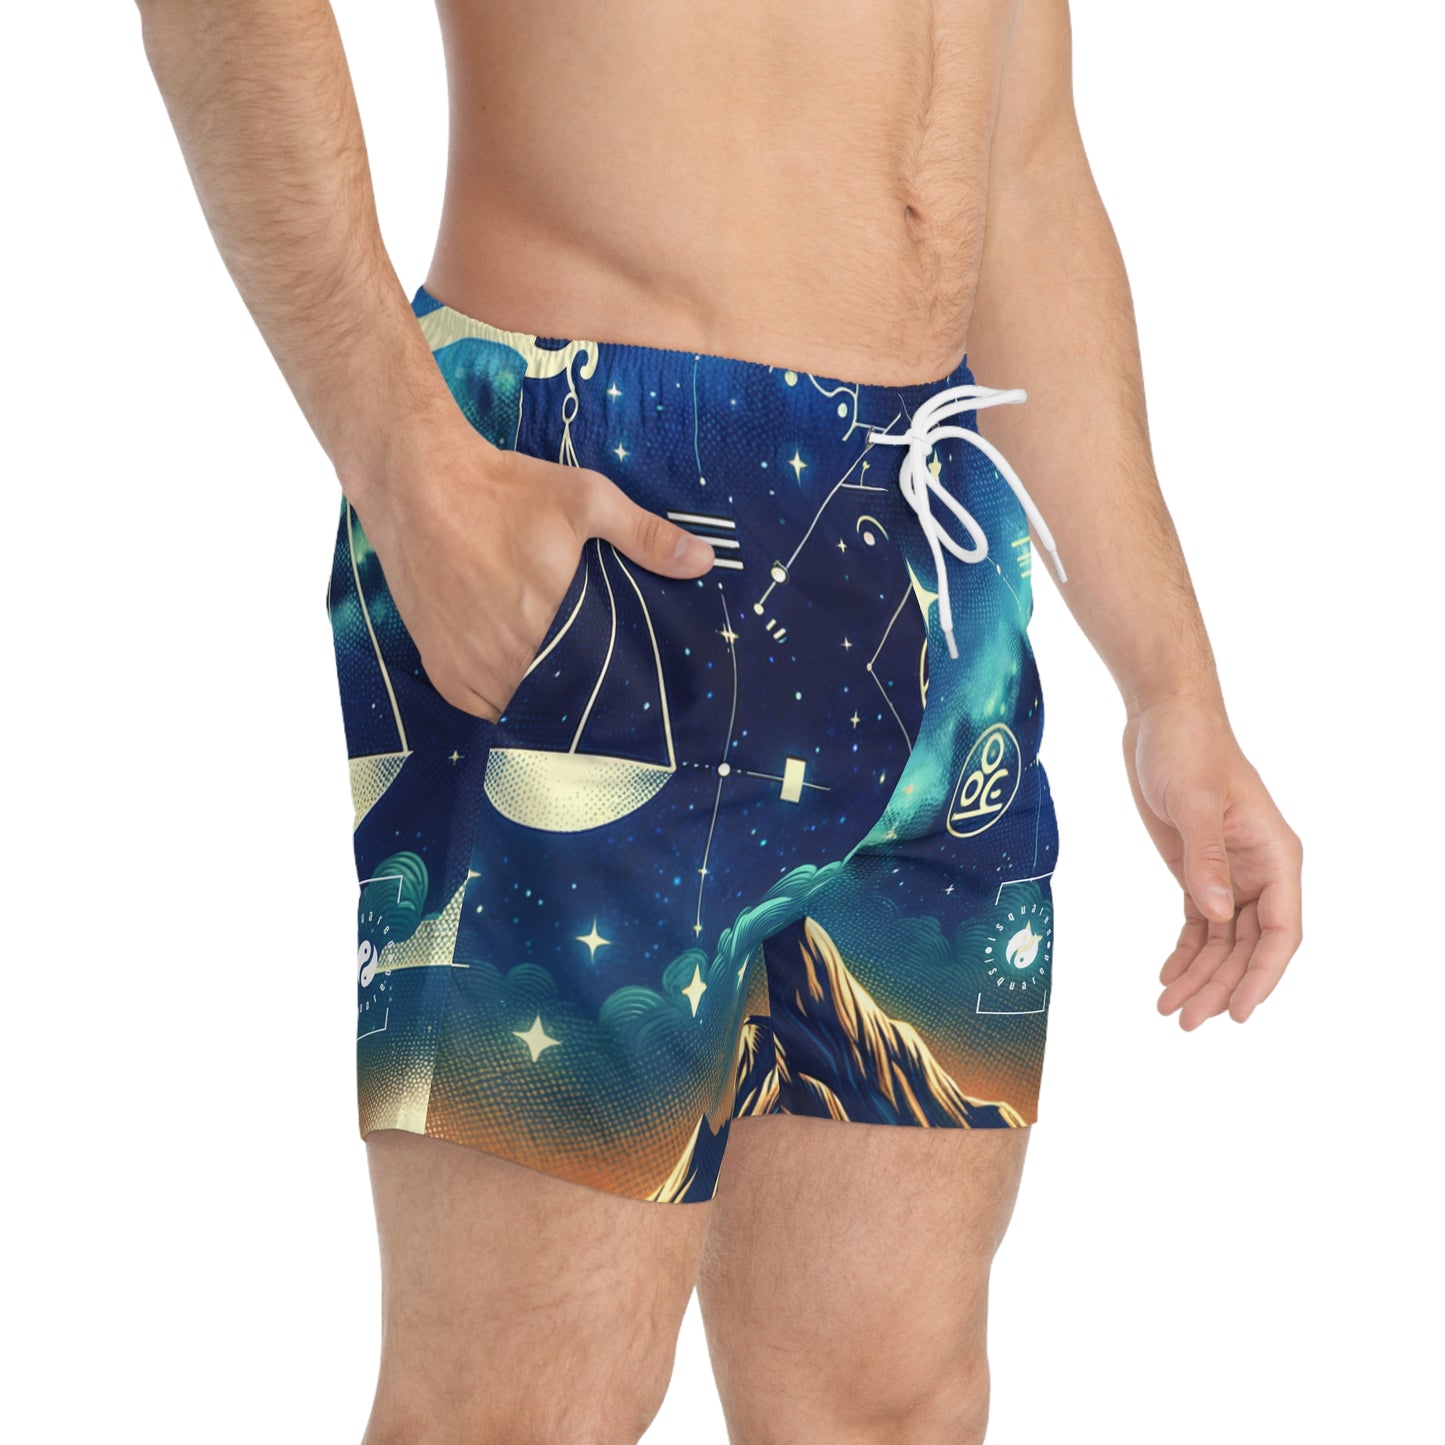 Celestial Libra - Swim Trunks for Men